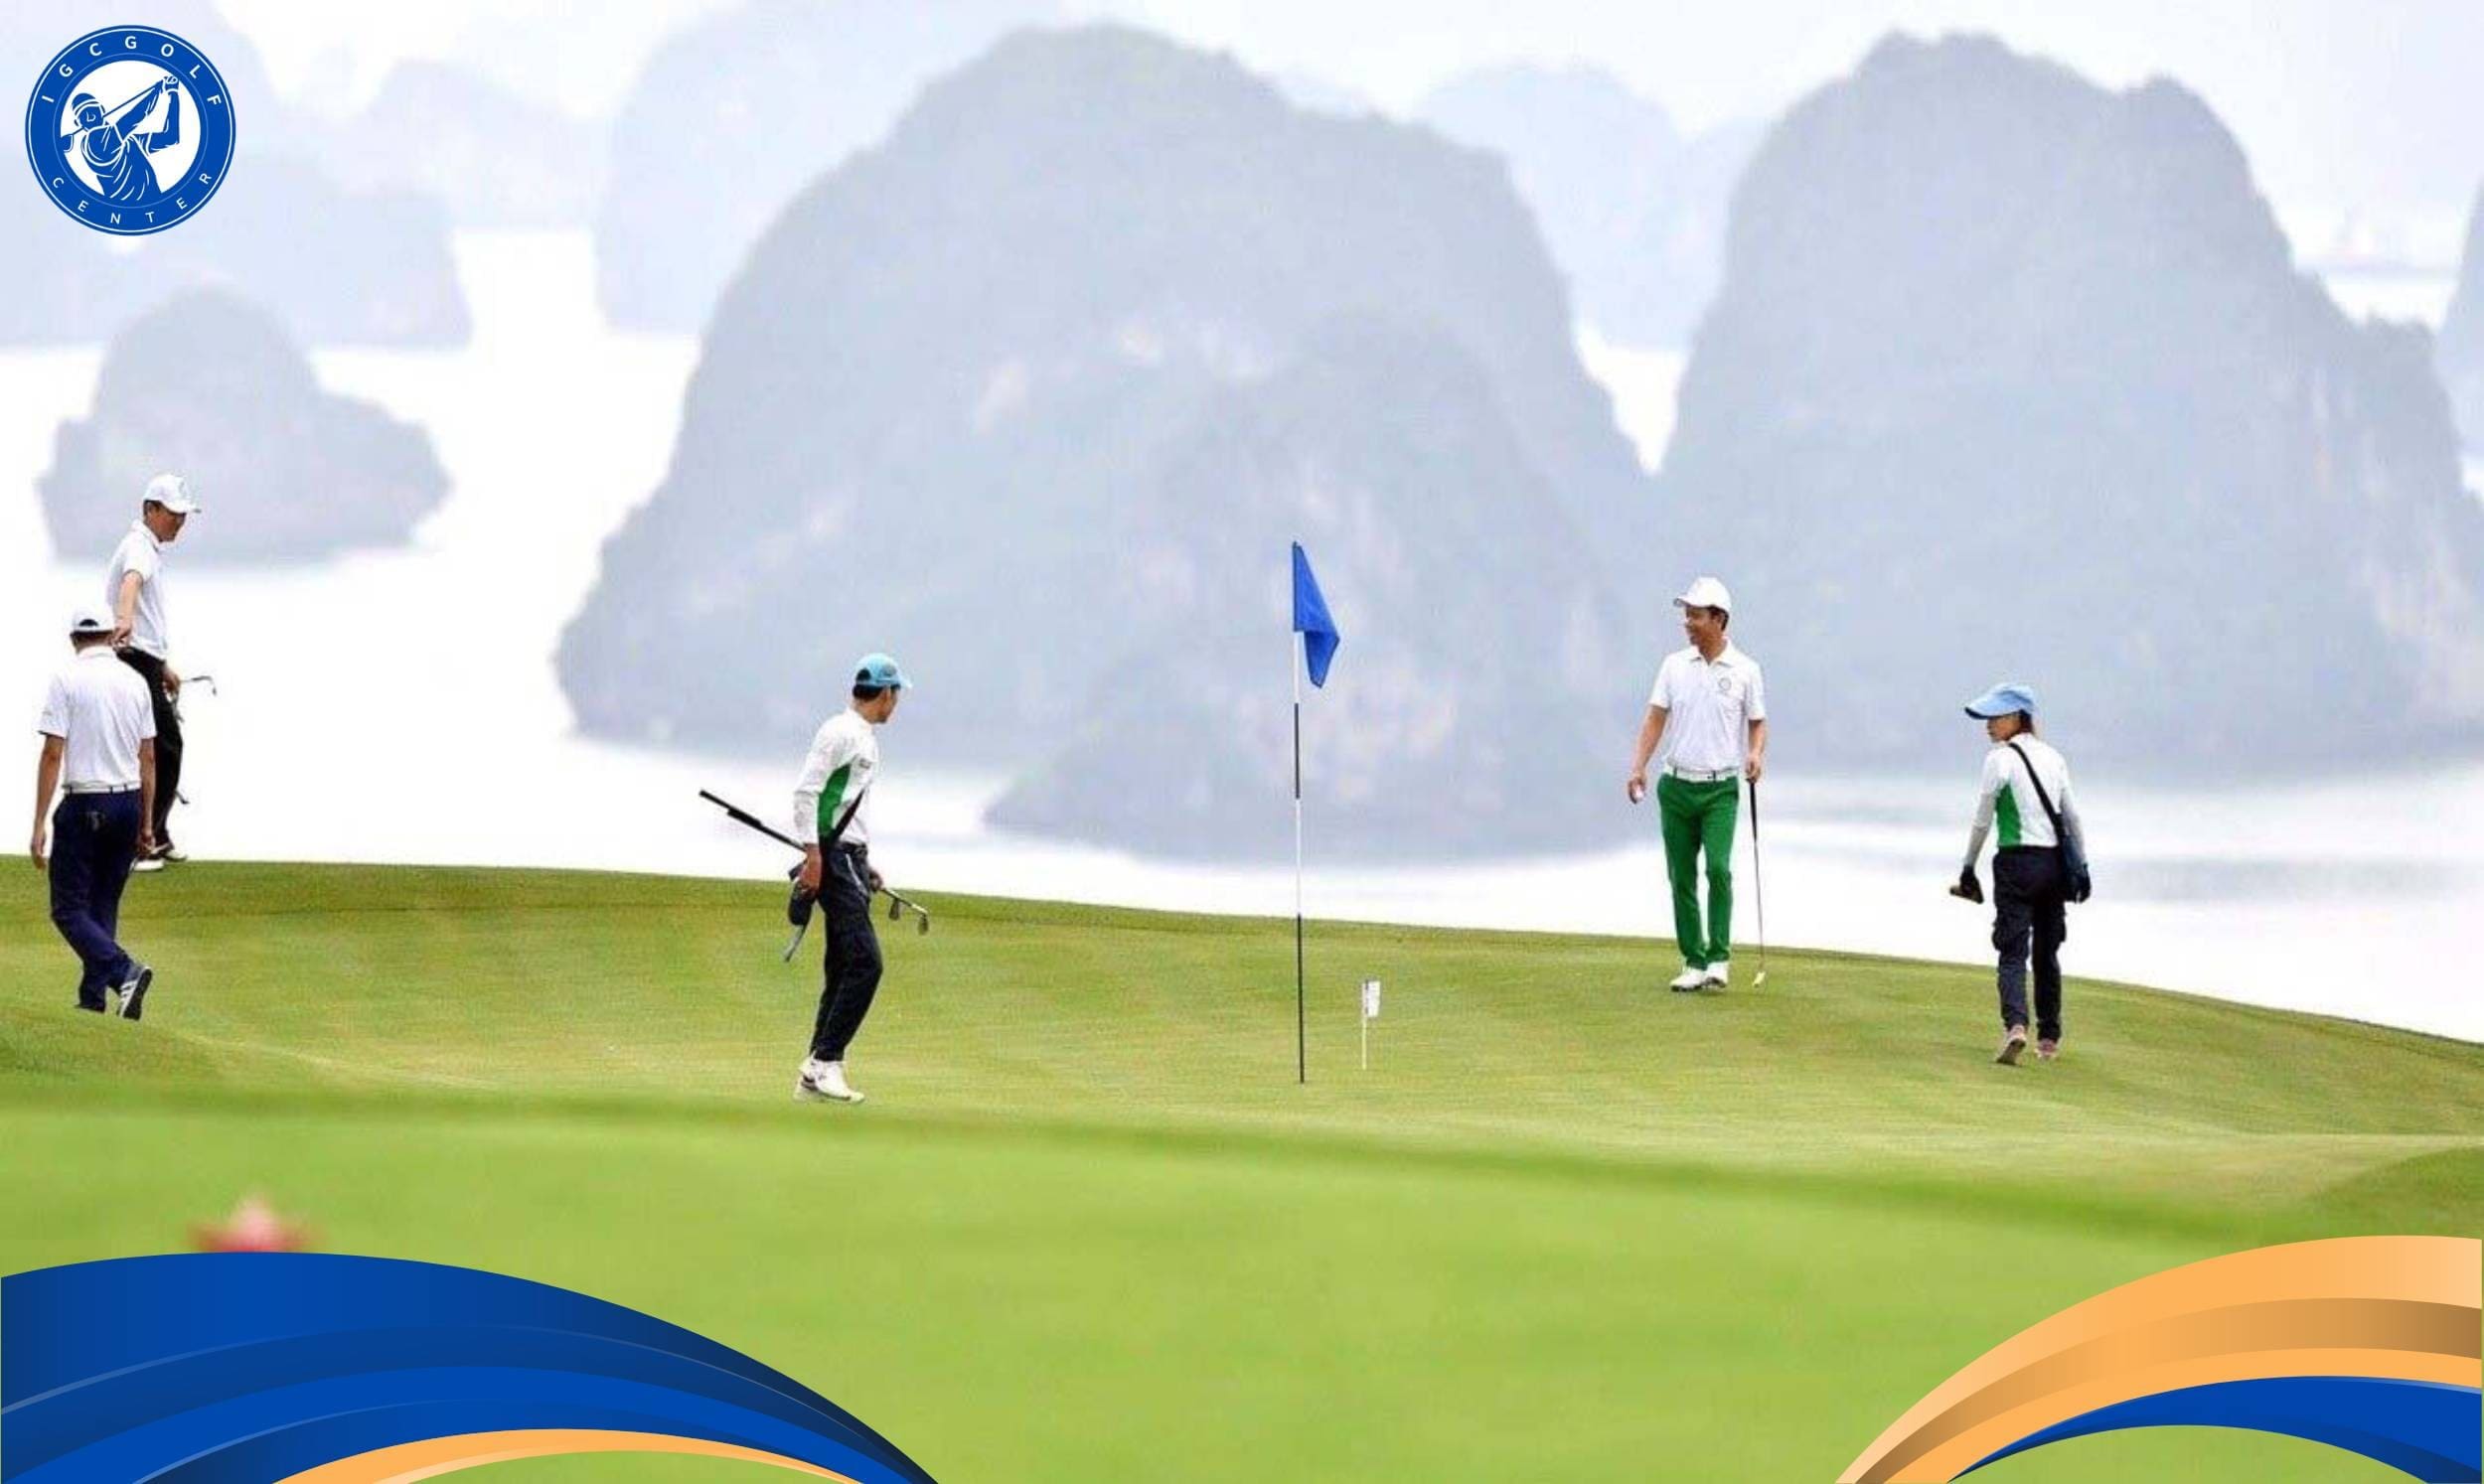 Chi phí học golf ở Quảng Ninh hiện nay là bao nhiêu